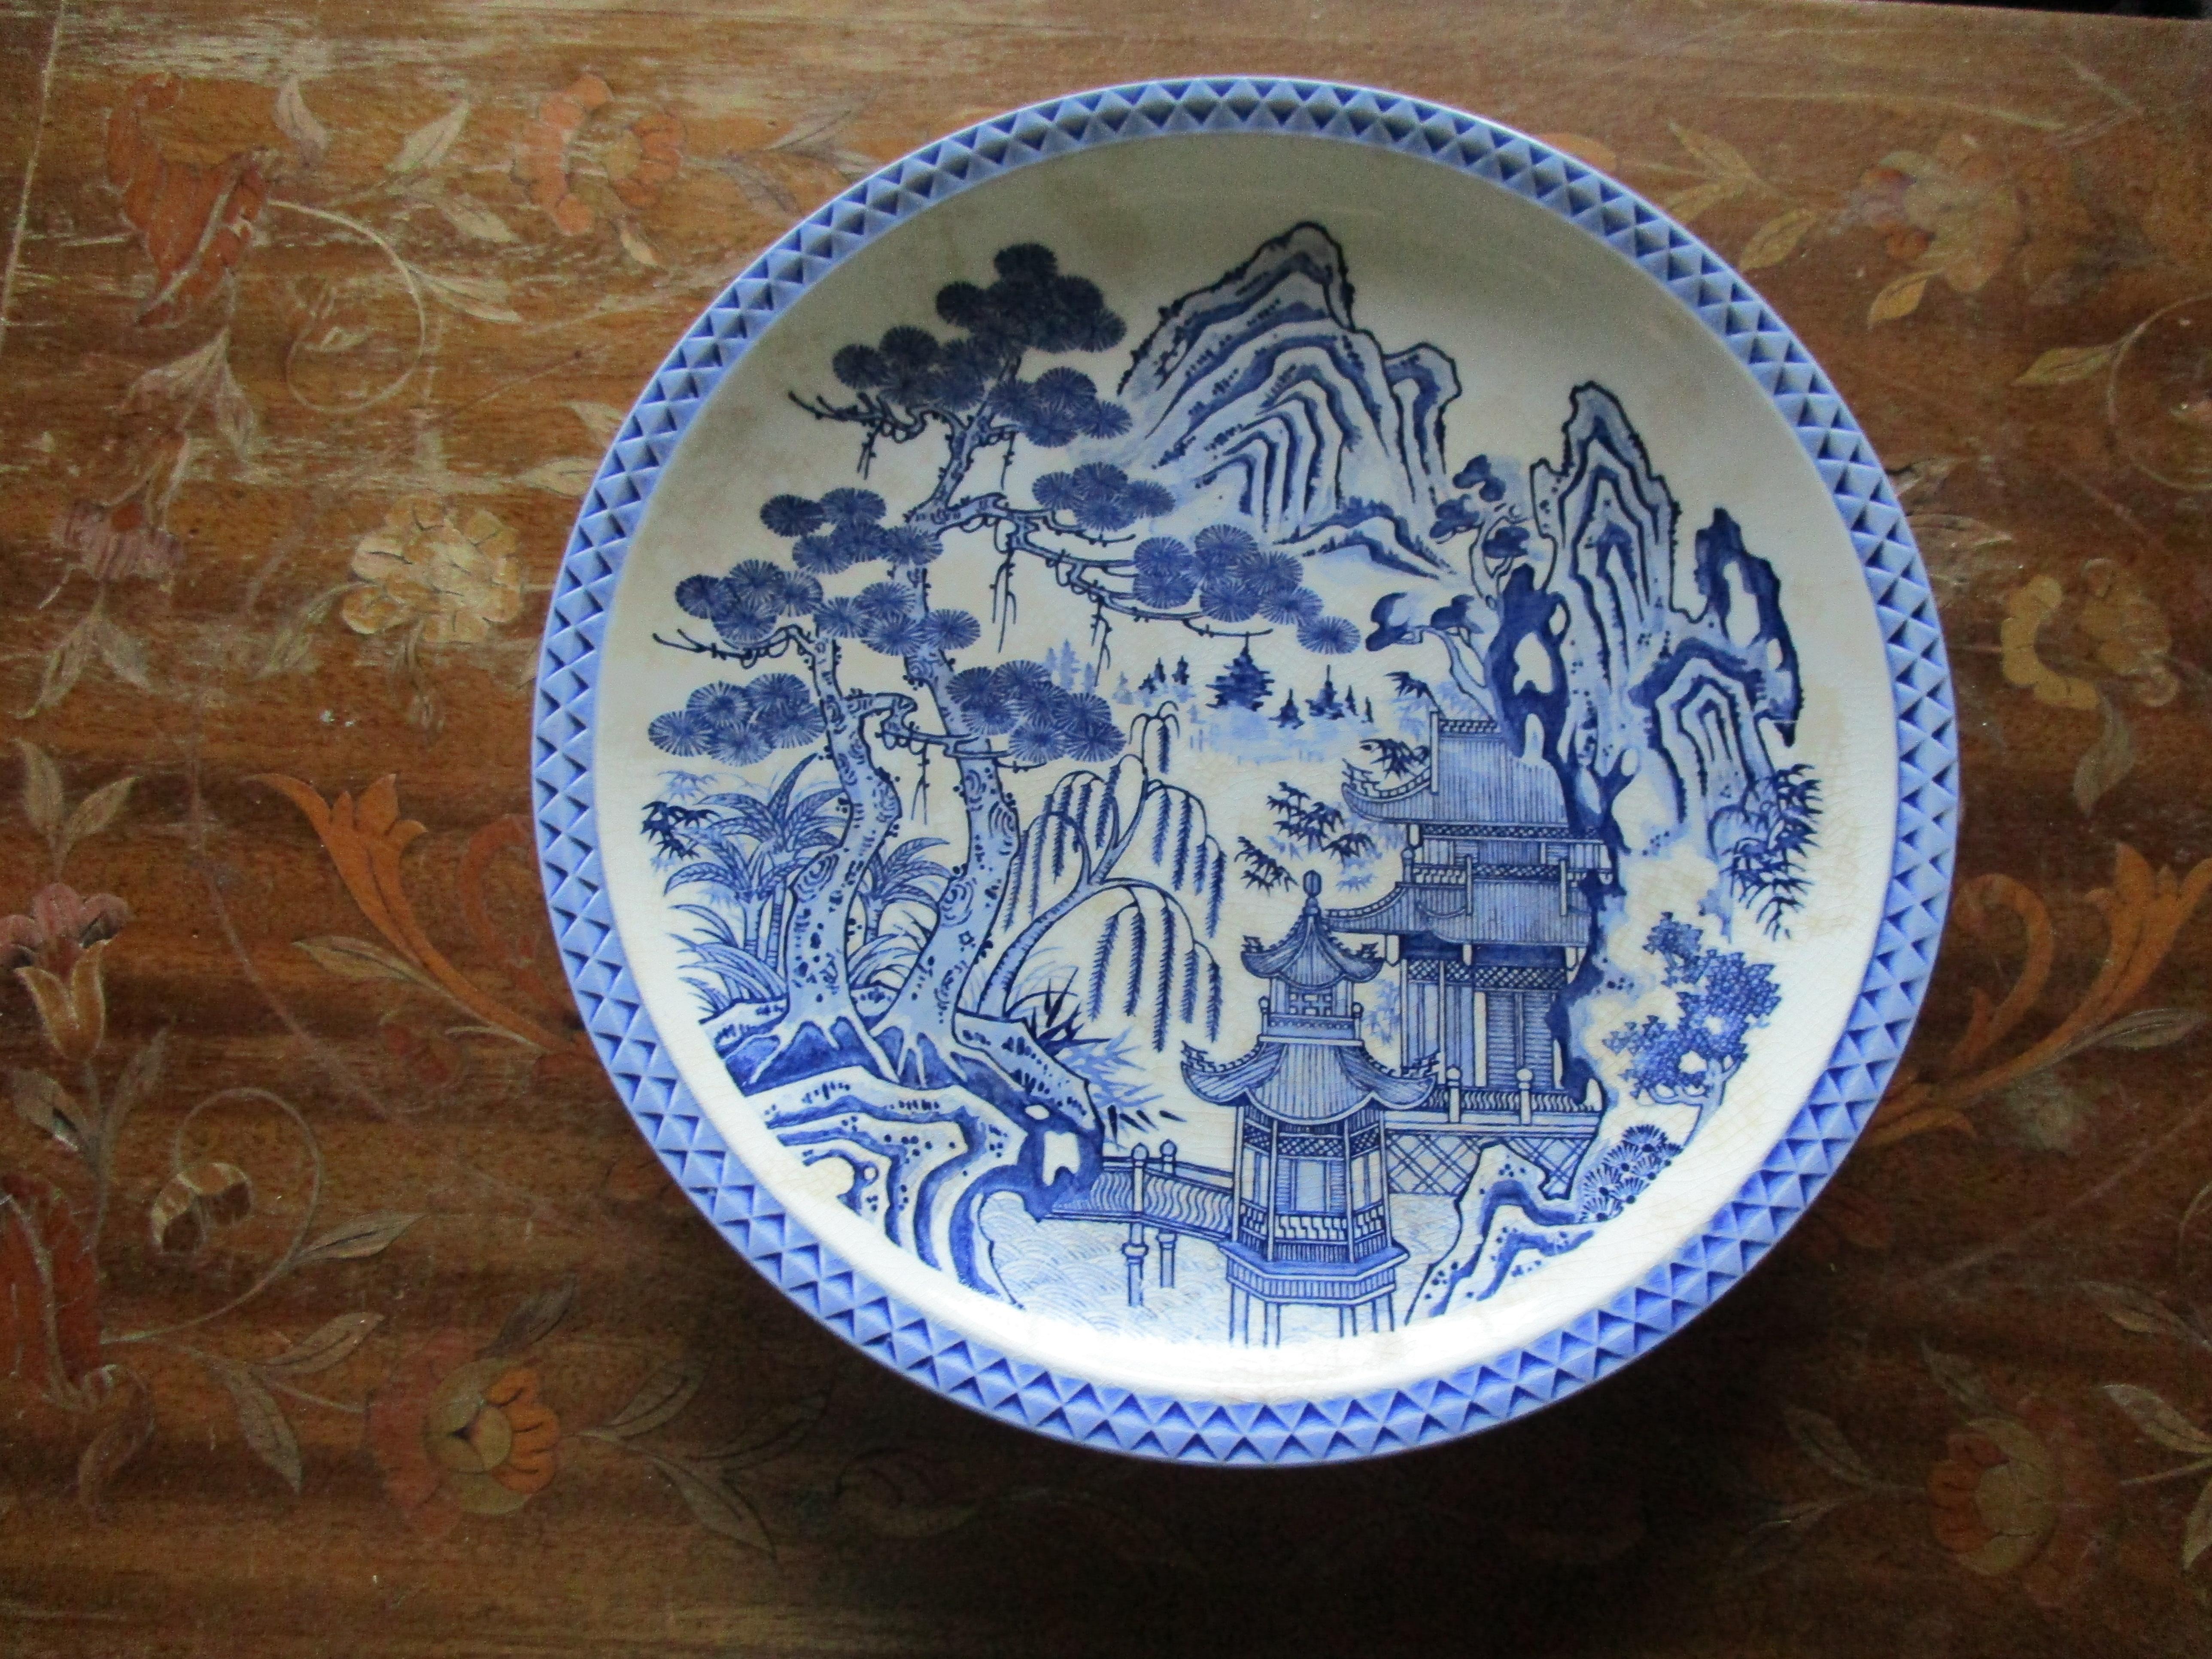 Il s'agit d'un rare chargeur/assiette en porcelaine bleue et blanche de 30 cm de diamètre. La toile de fond est détaillée avec une pagode, une passerelle, des montagnes et un saule bleu fantaisiste. Ce chargeur en porcelaine bleu et blanc